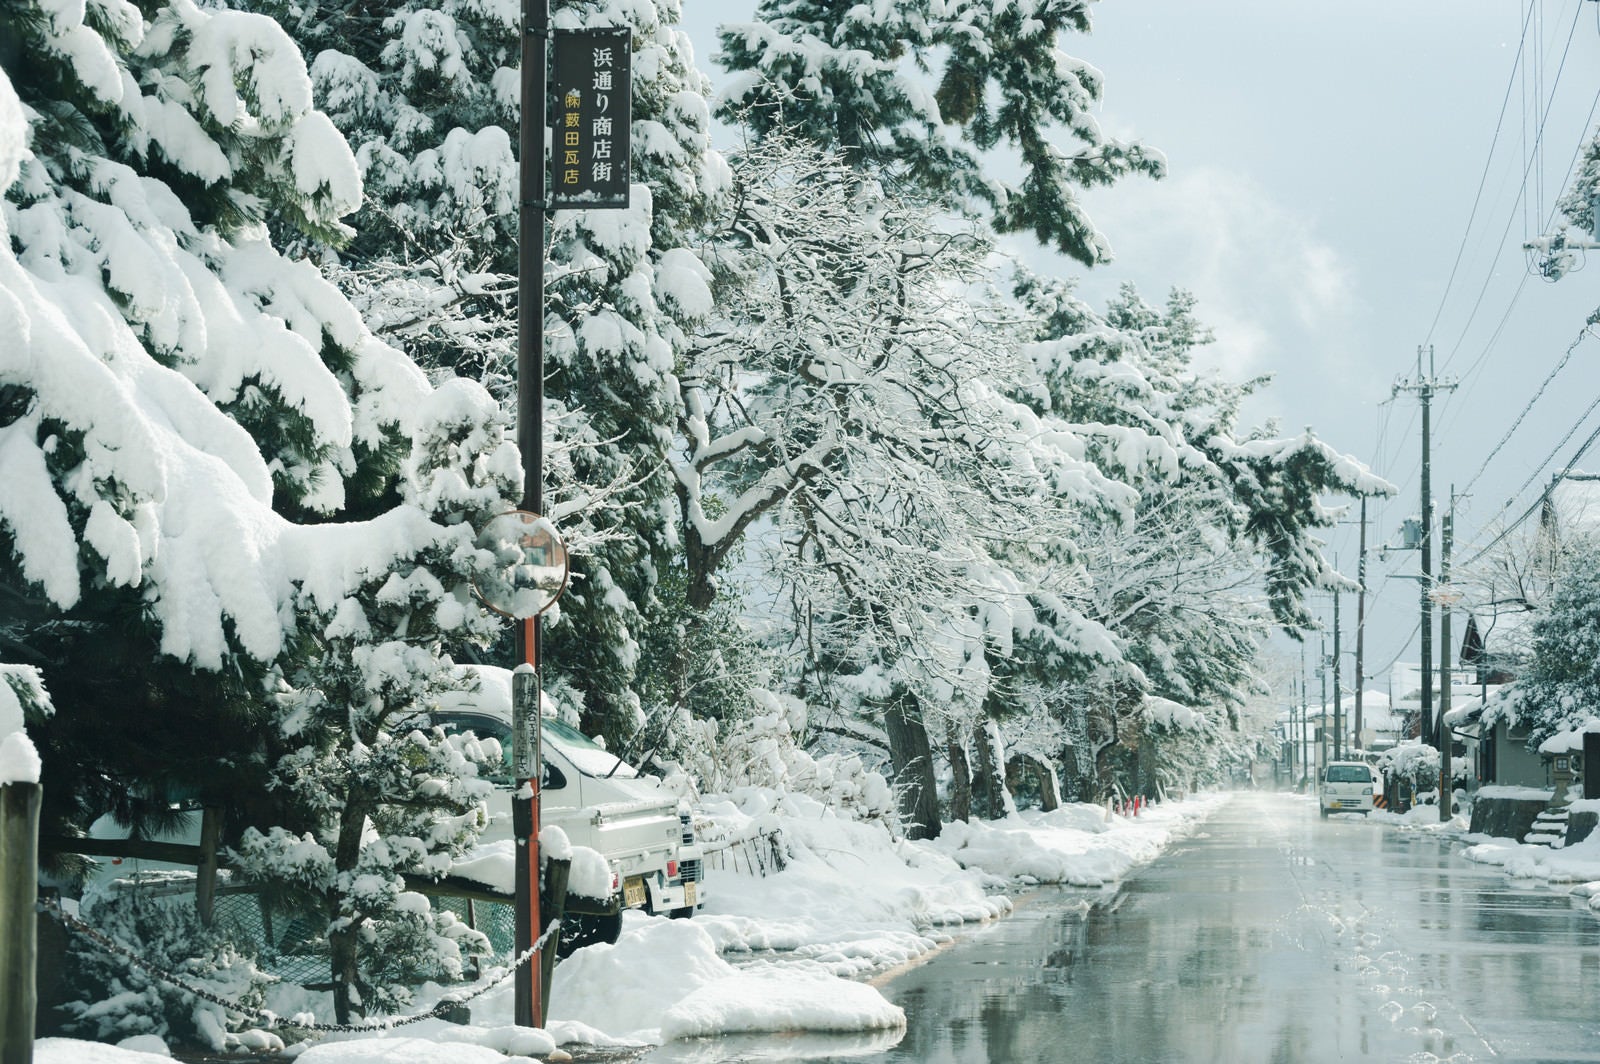 「並木の積雪と道路の融雪」の写真